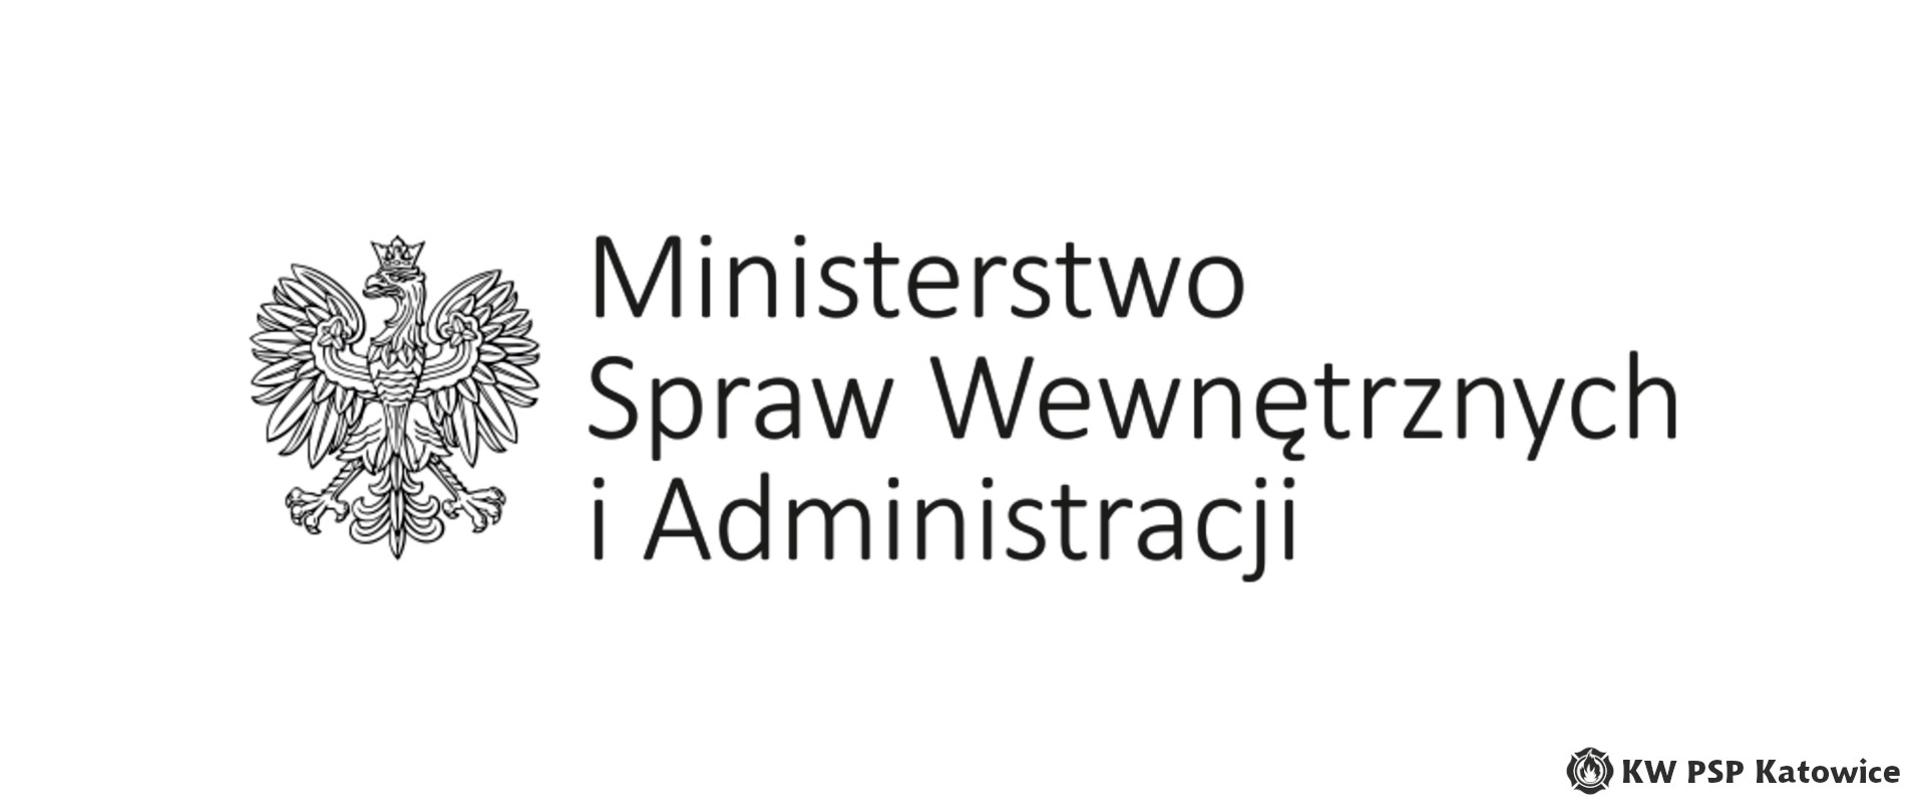 Ilustracja przedstawia czarno - białego orła oraz duży czarny napis ministerstwo Spraw Wewnętrznych i administracji. W dolnym prawym rogu znajduje się napis KW PSP Katowice.